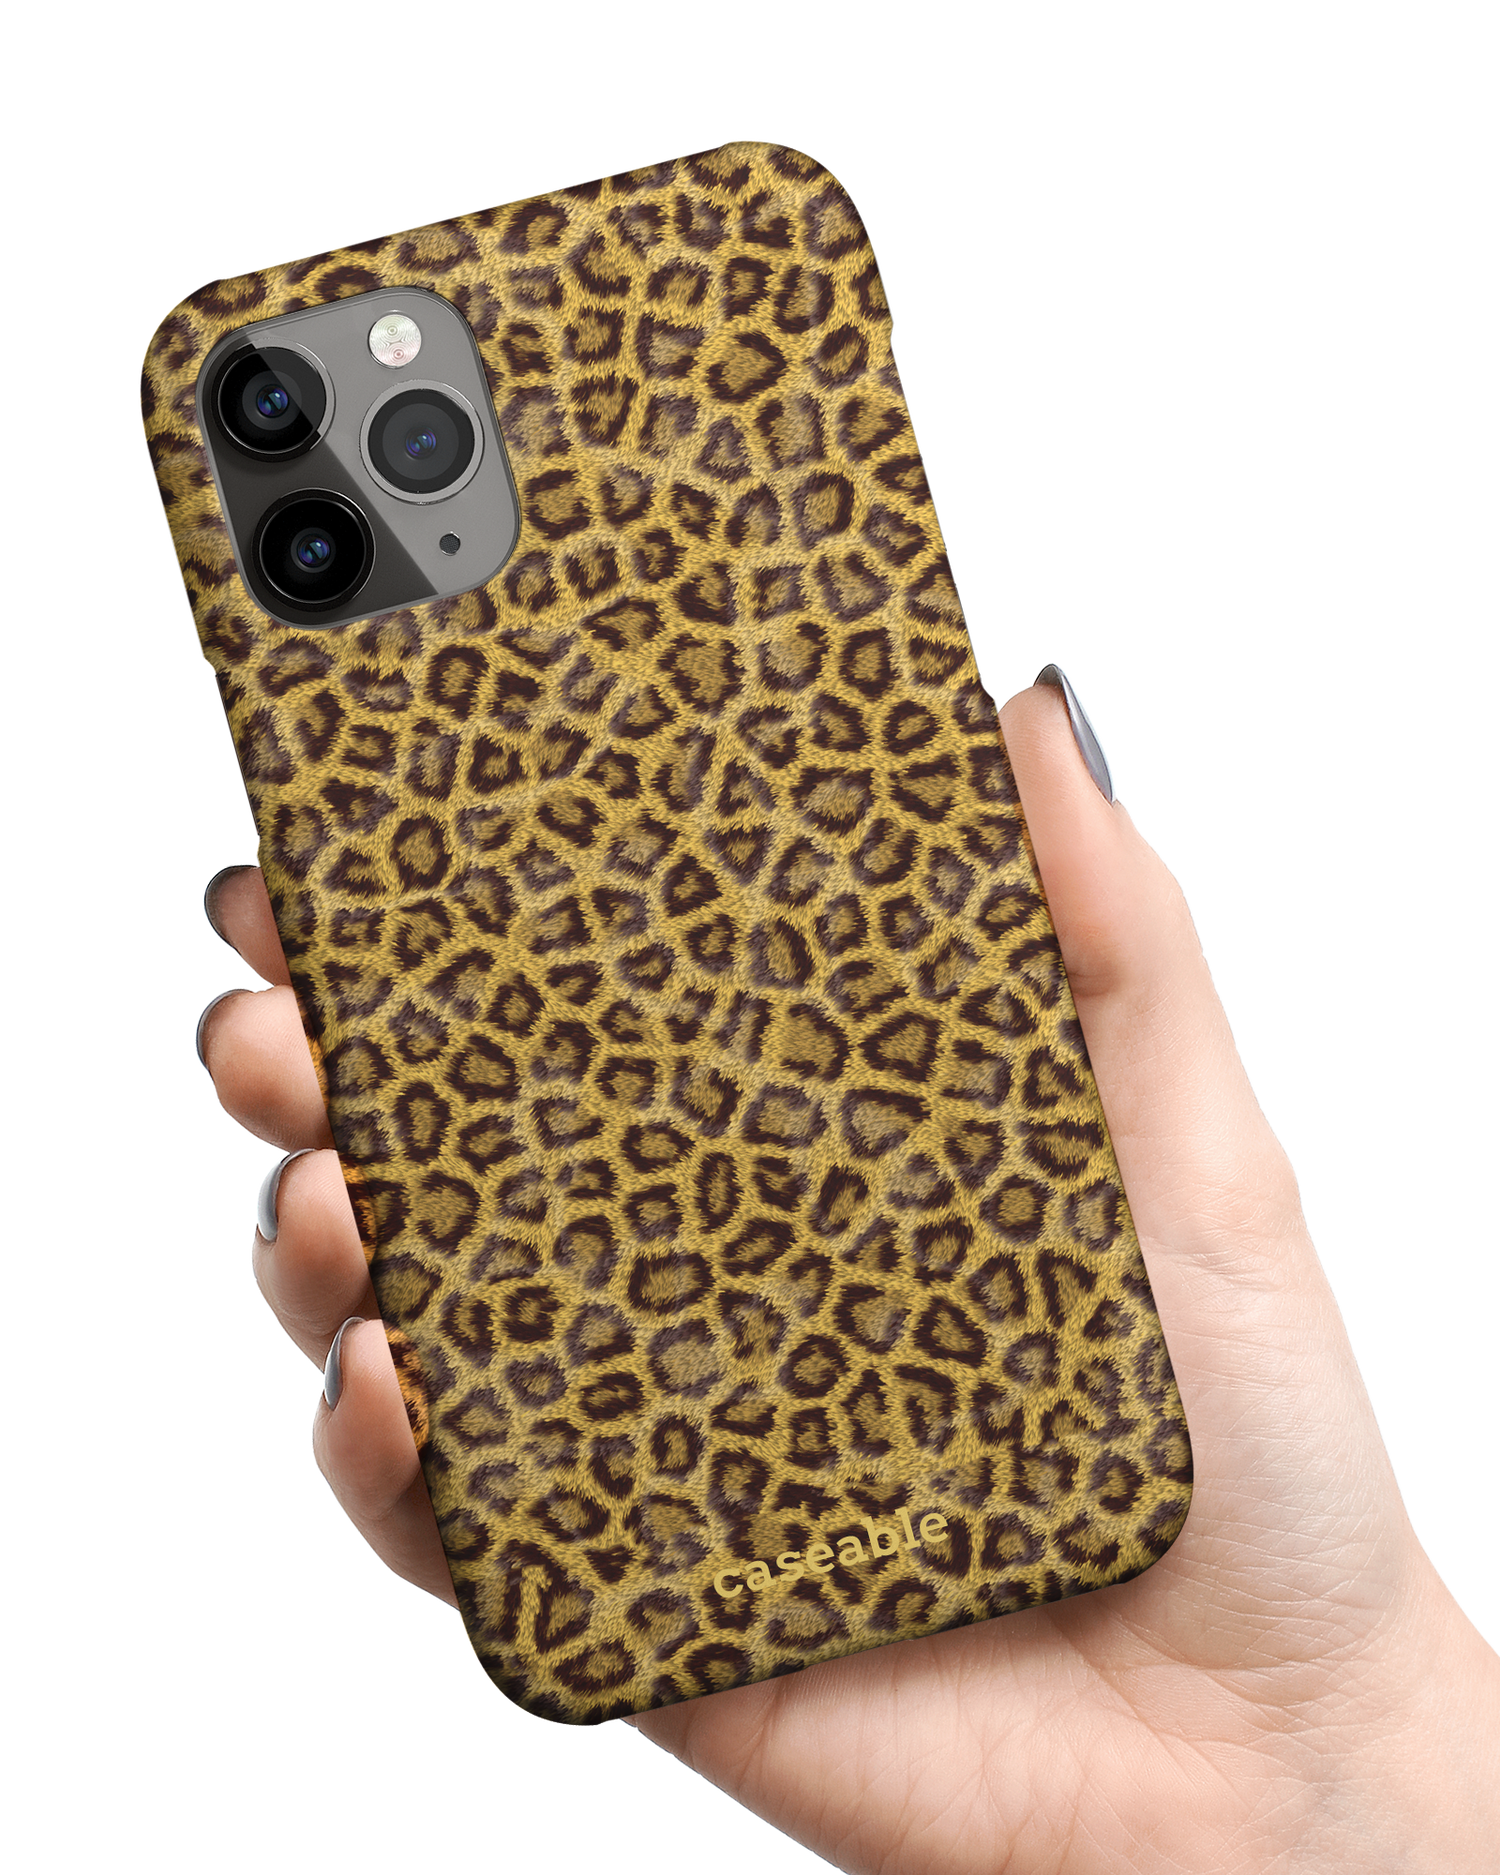 Leopard Skin Hardcase Handyhülle Apple iPhone 11 Pro Max in der Hand gehalten